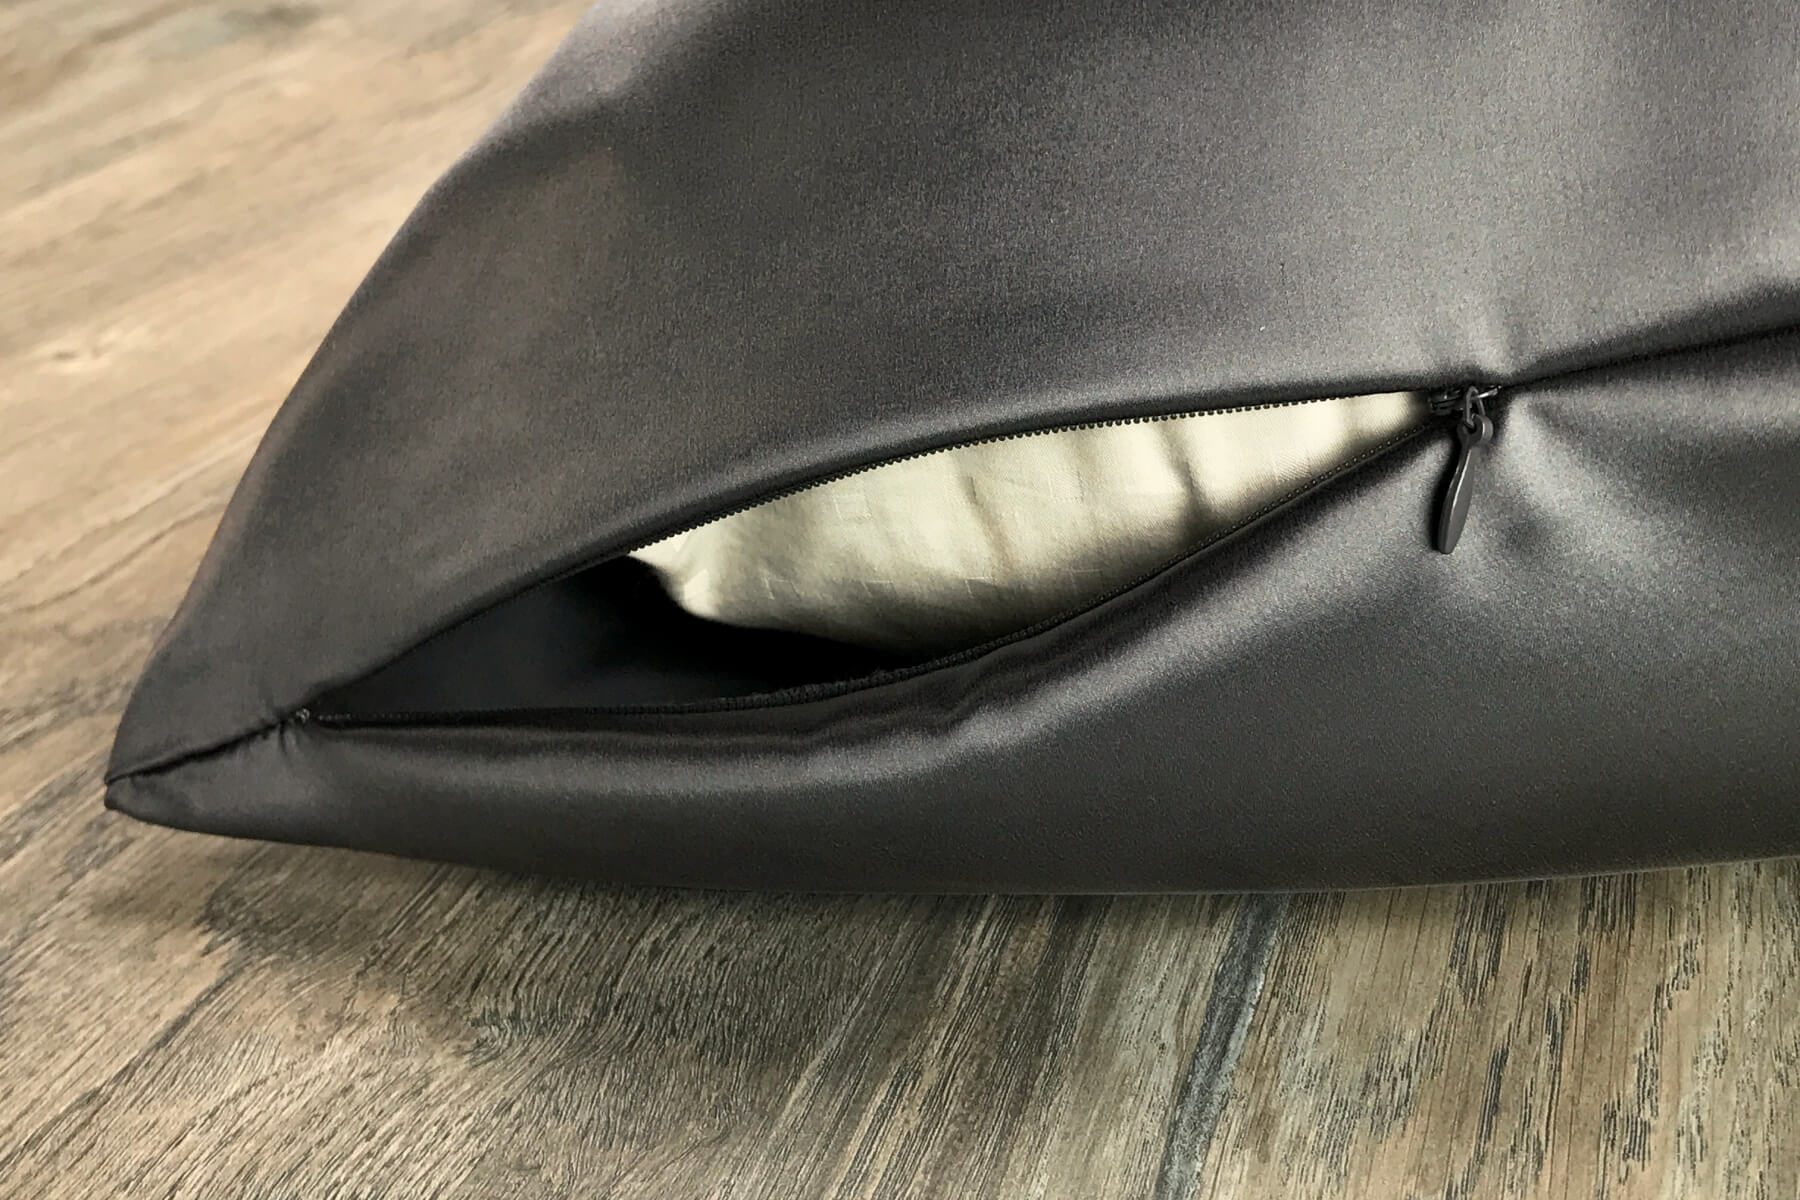 Celestial Silk charcoal gray silk pillowcase with hidden zipper